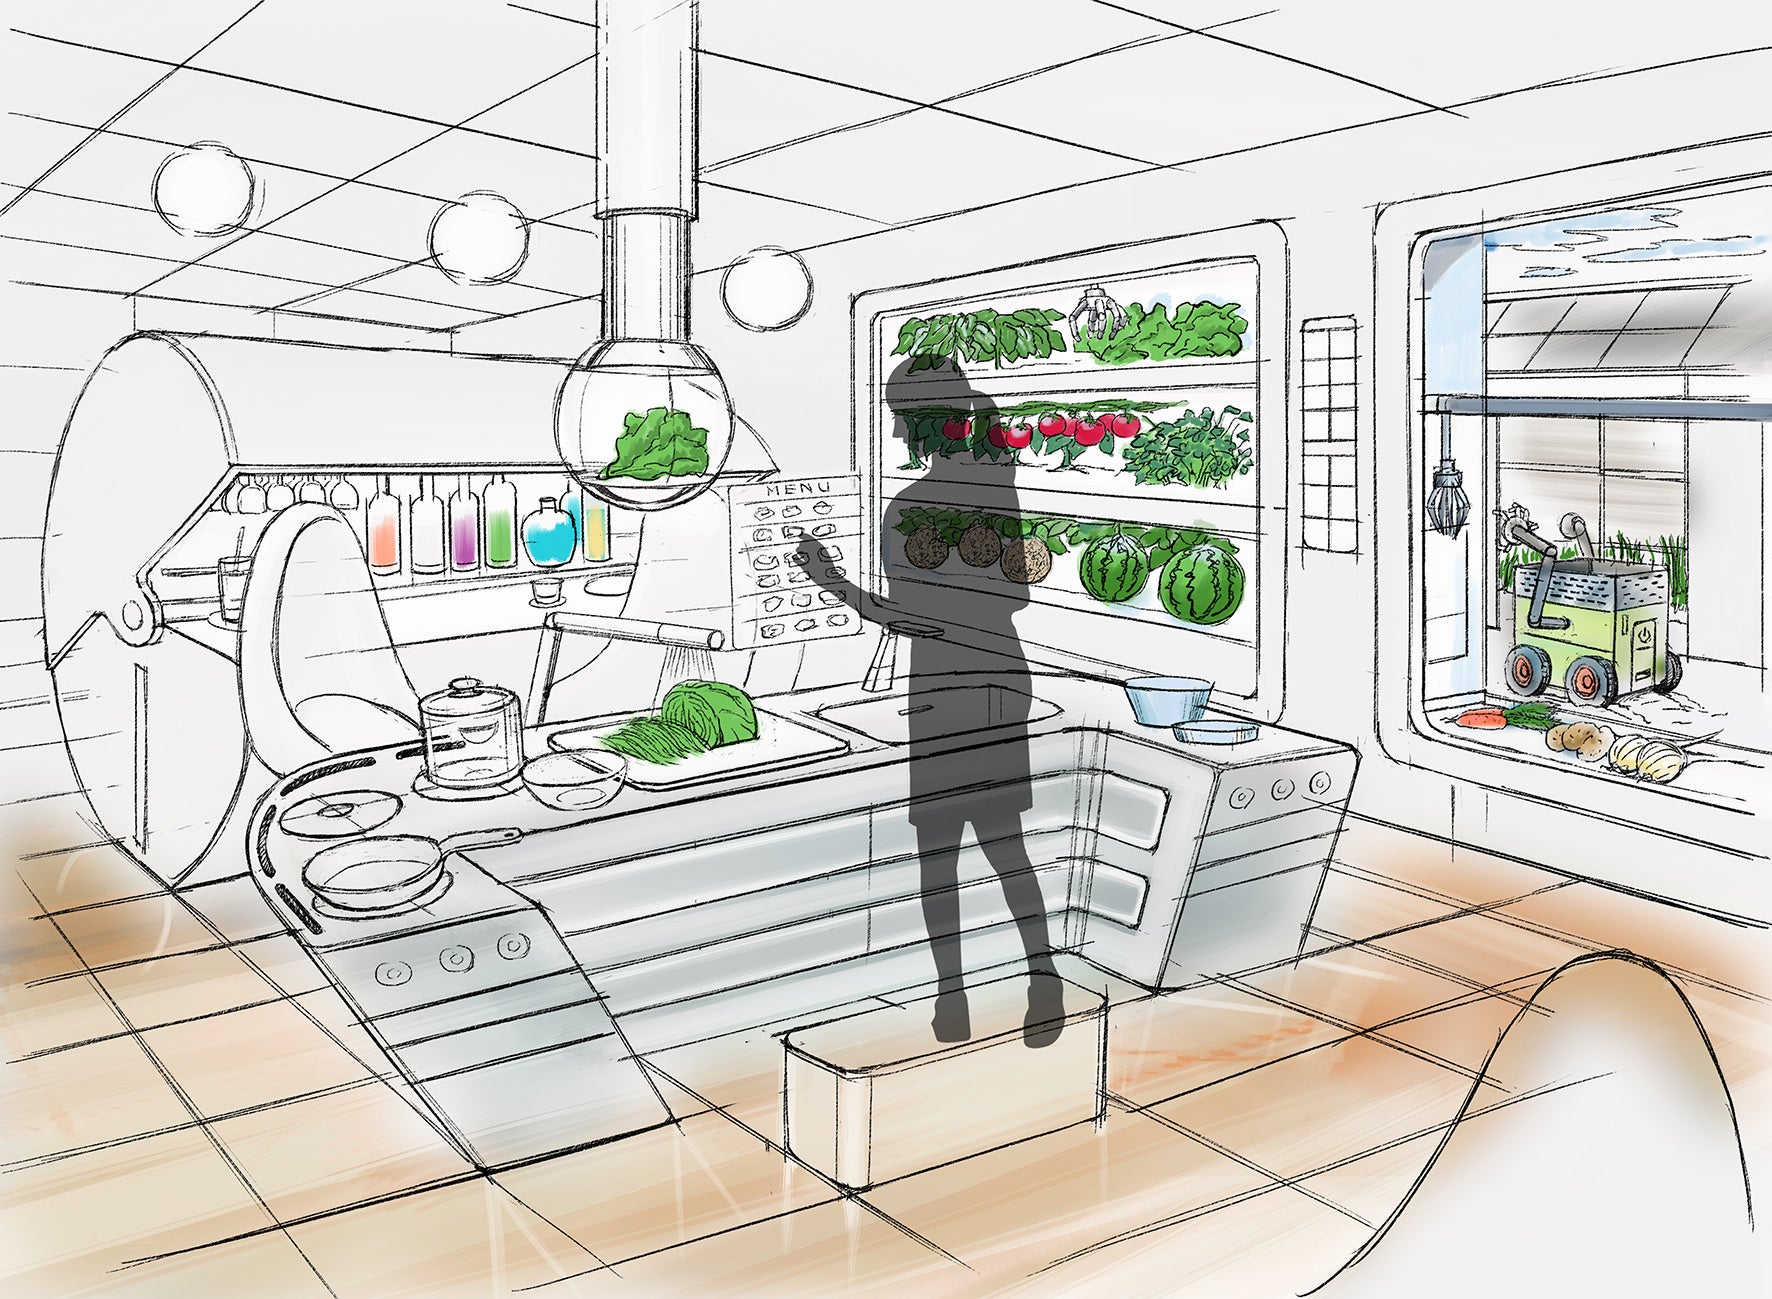 キッチンと食住空間の新たな可能性に挑戦「未来キッチンプロジェクト」を始動！応援リーダーの森 泉さんが理想とする未来キッチンは、「新鮮な野菜が食べられる、畑とつながったキッチン」のサブ画像9